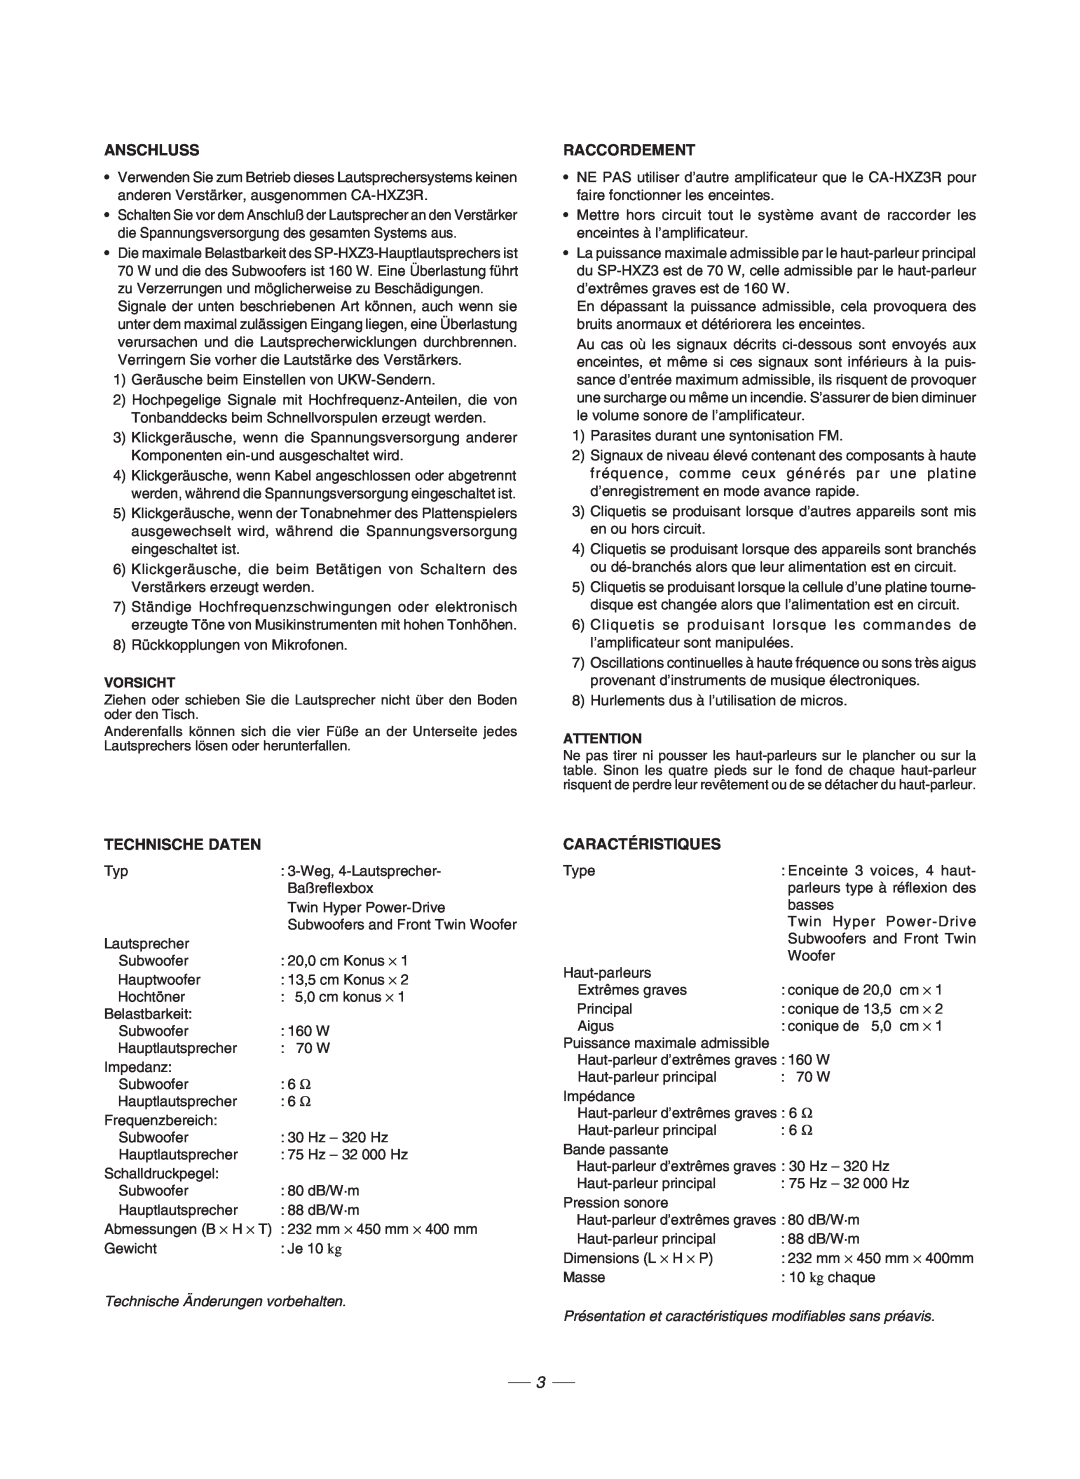 JVC GVT0086-008A, CA-HXZ3R manual Anschluss, Raccordement, Technische Daten, Caractéristiques 